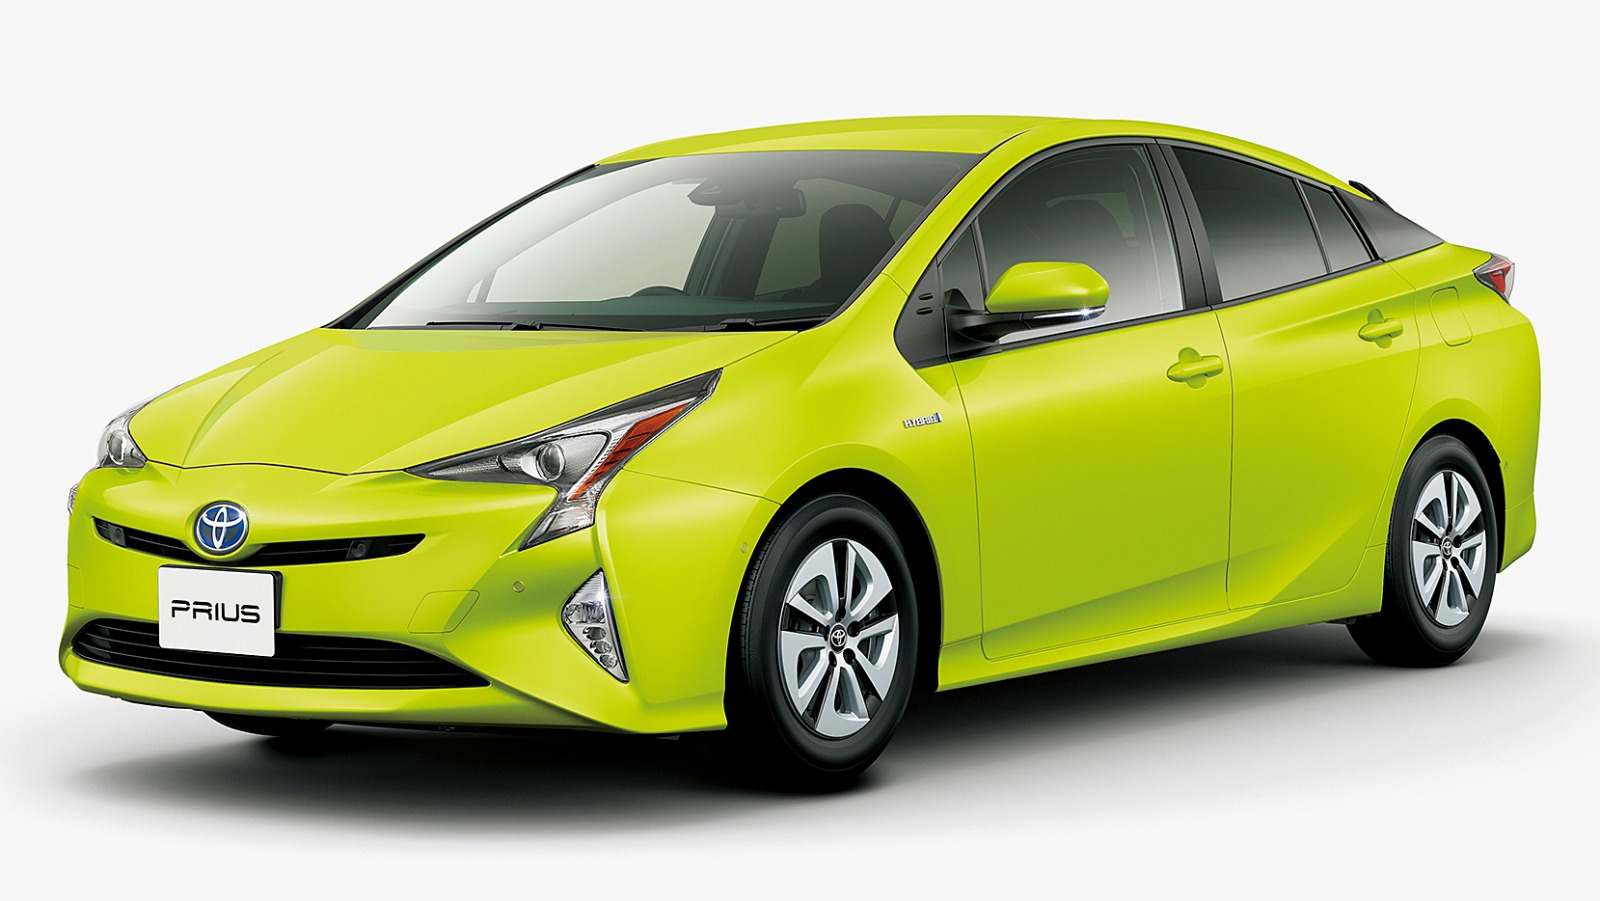 Toyota’s sick paint job could cut carbon emissions